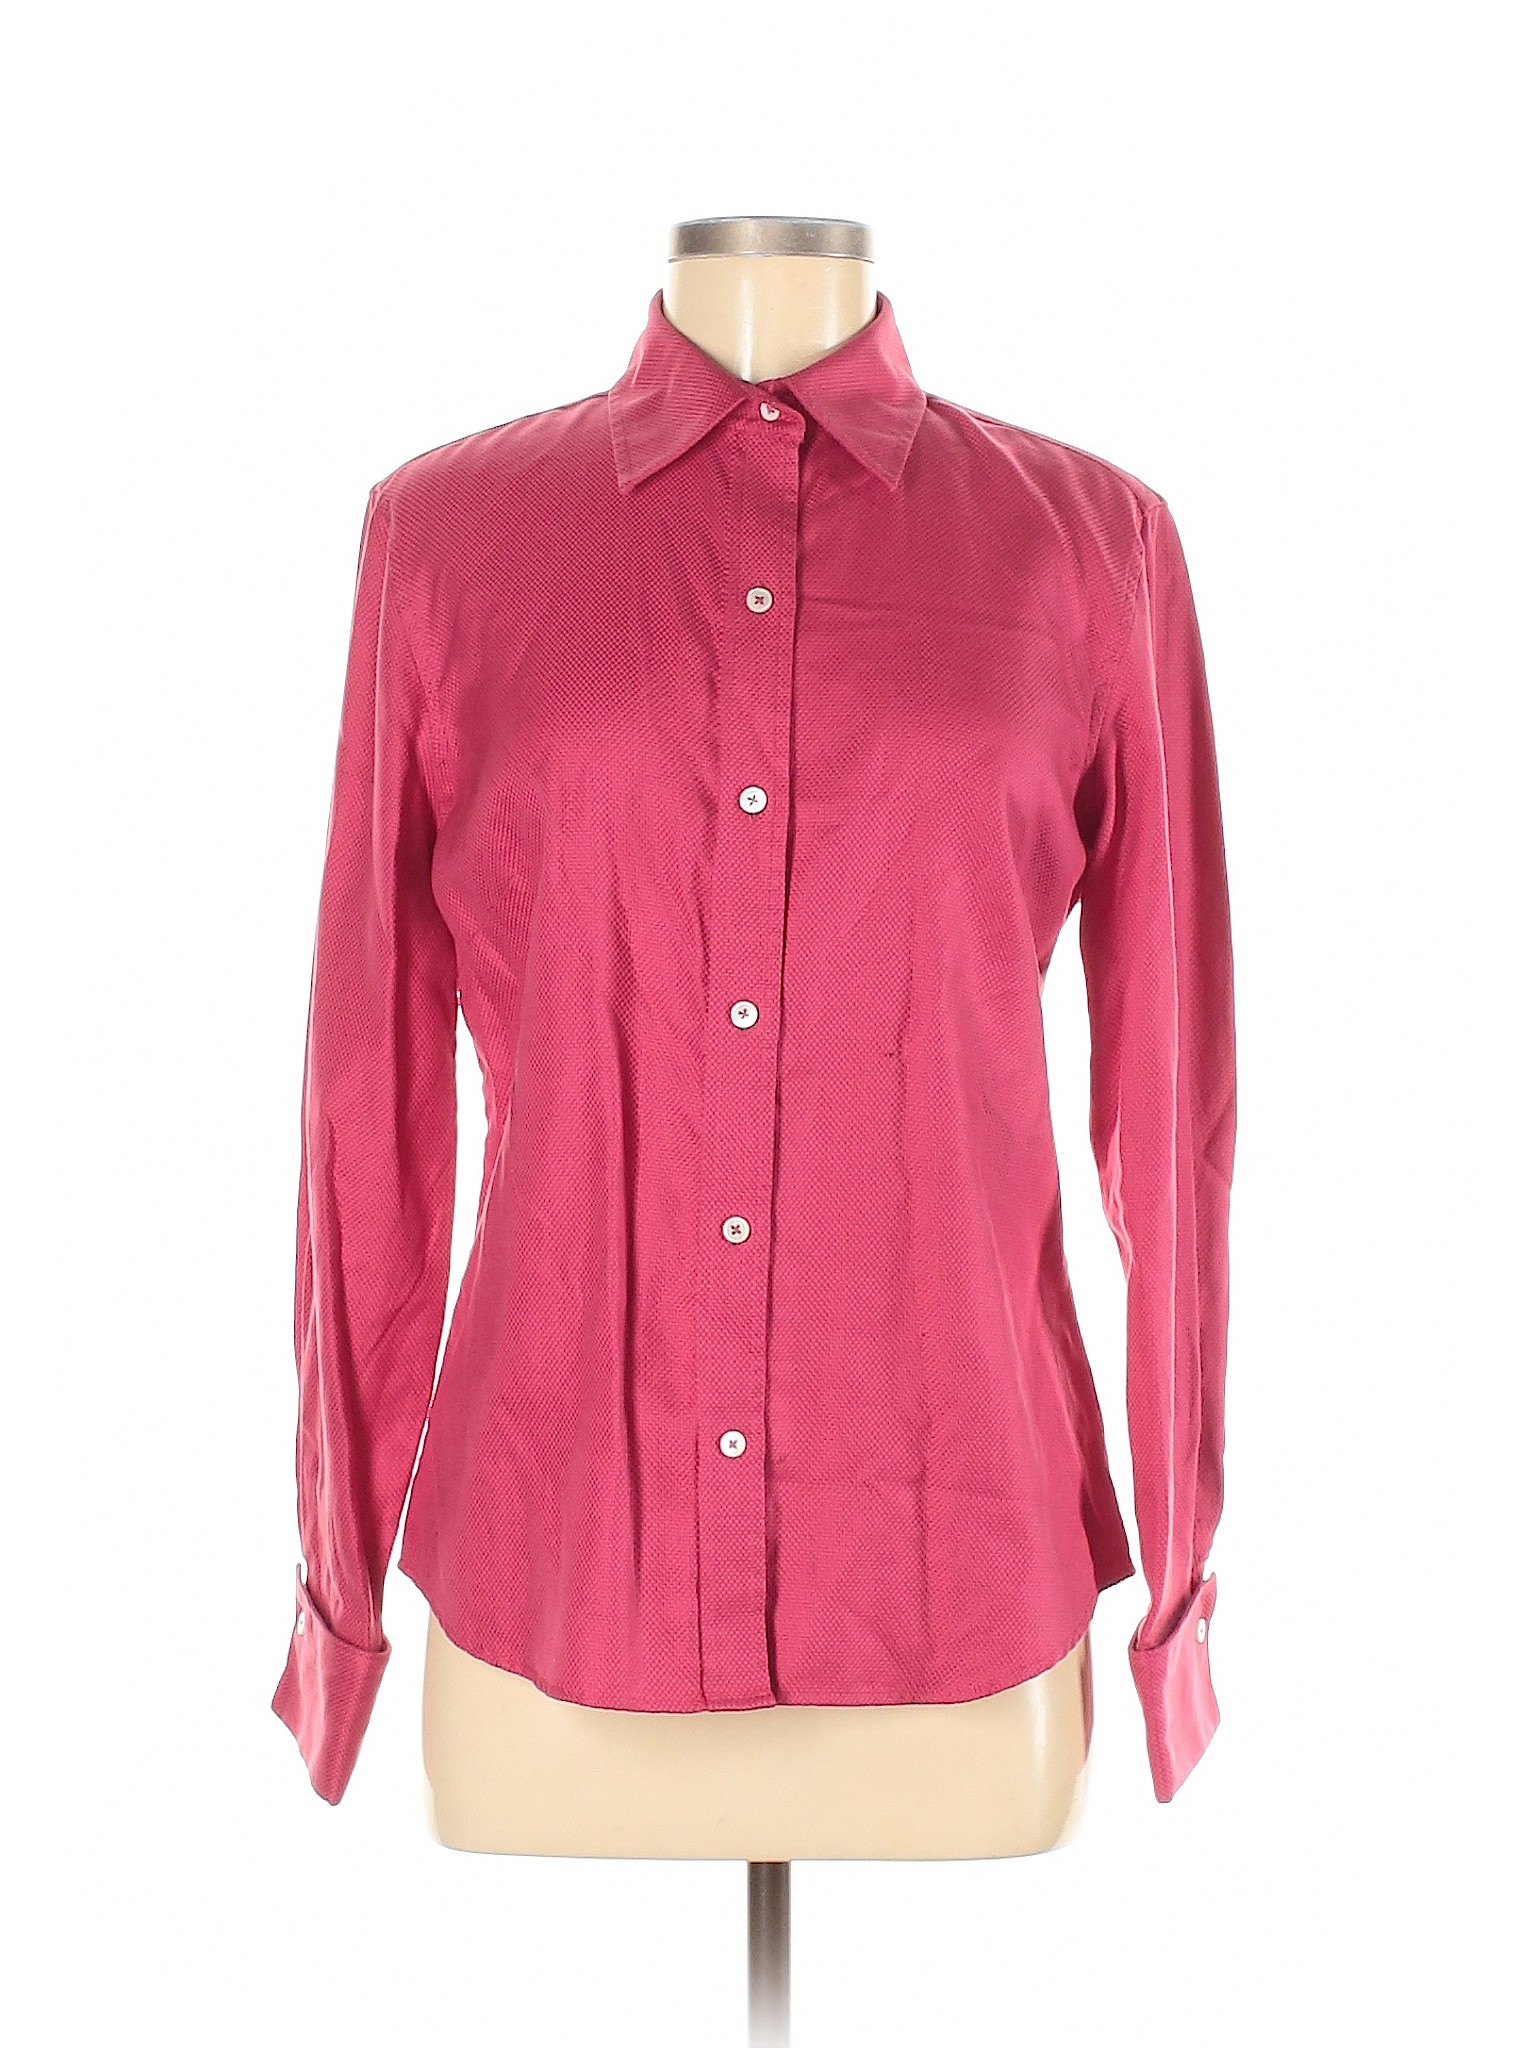 Banana Republic Women Pink Long Sleeve Button-Down Shirt M | eBay